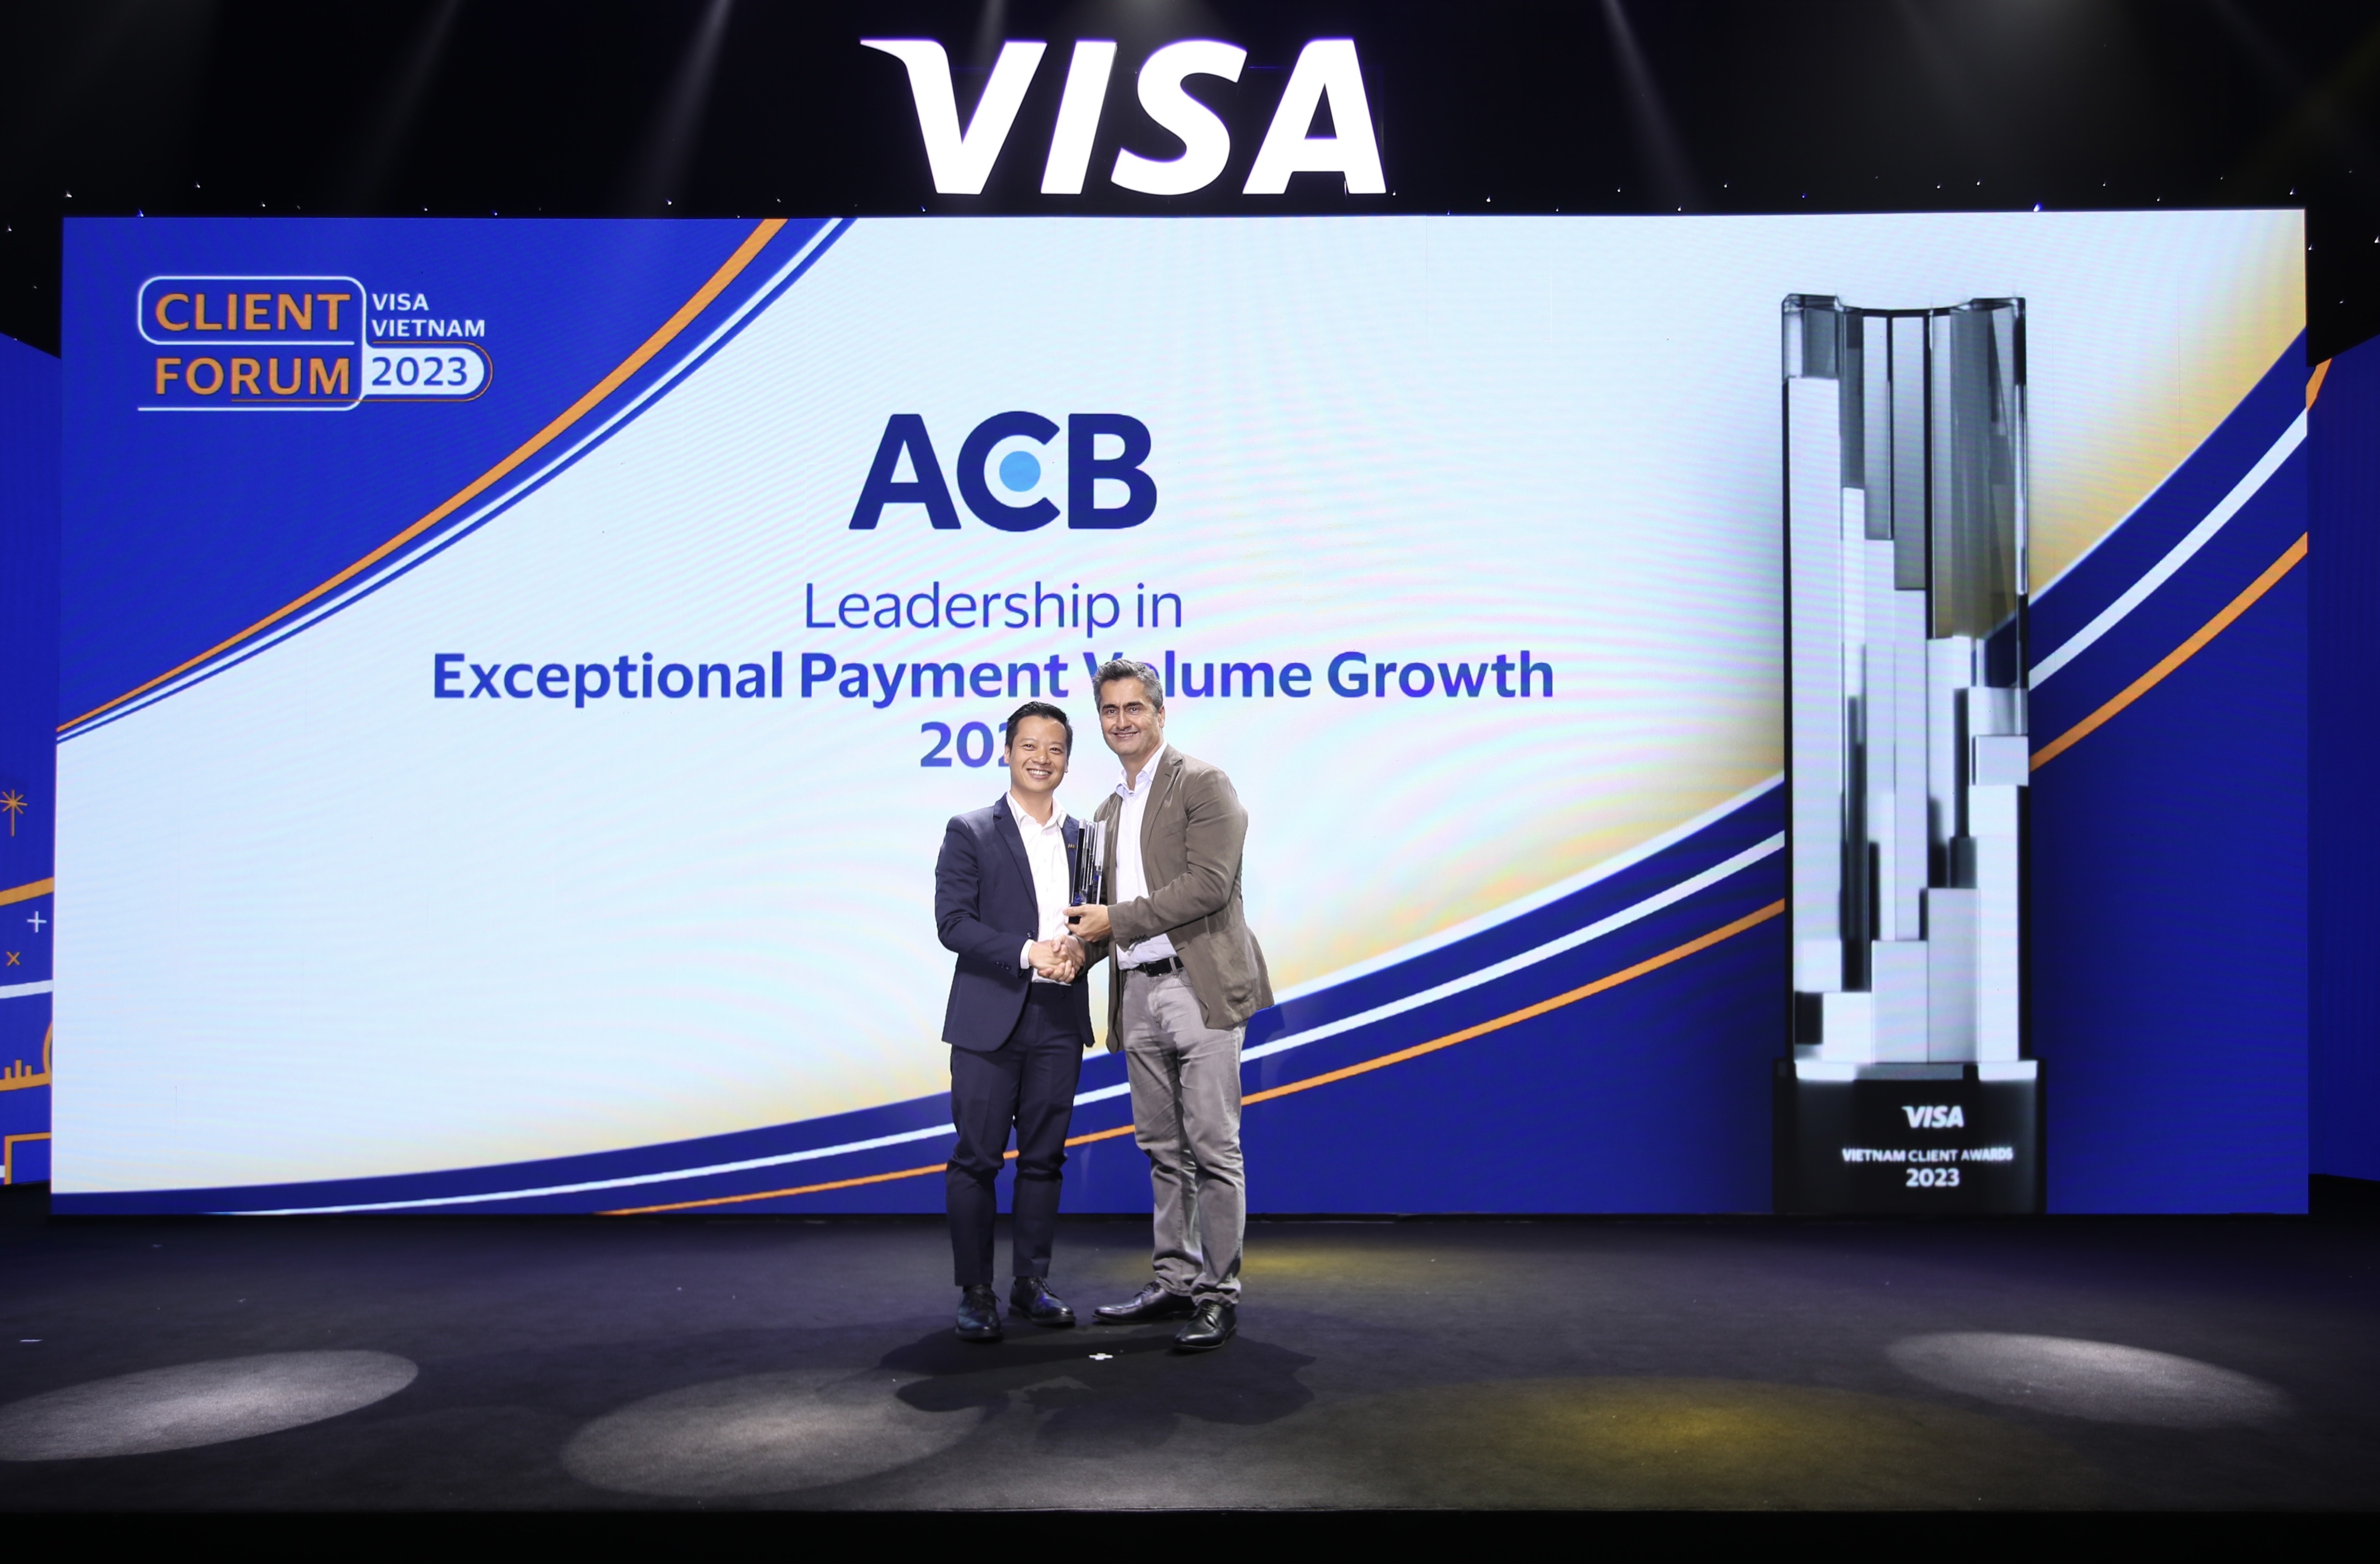 Ông Nguyễn Tâm Khoa, Phó Giám Đốc Khối Khách hàng Cá nhân kiêm Giám đốc Trung Tâm Giải Pháp Thanh Toán của ngân hàng ACB nhận giải thưởng từ đại diện Visa.